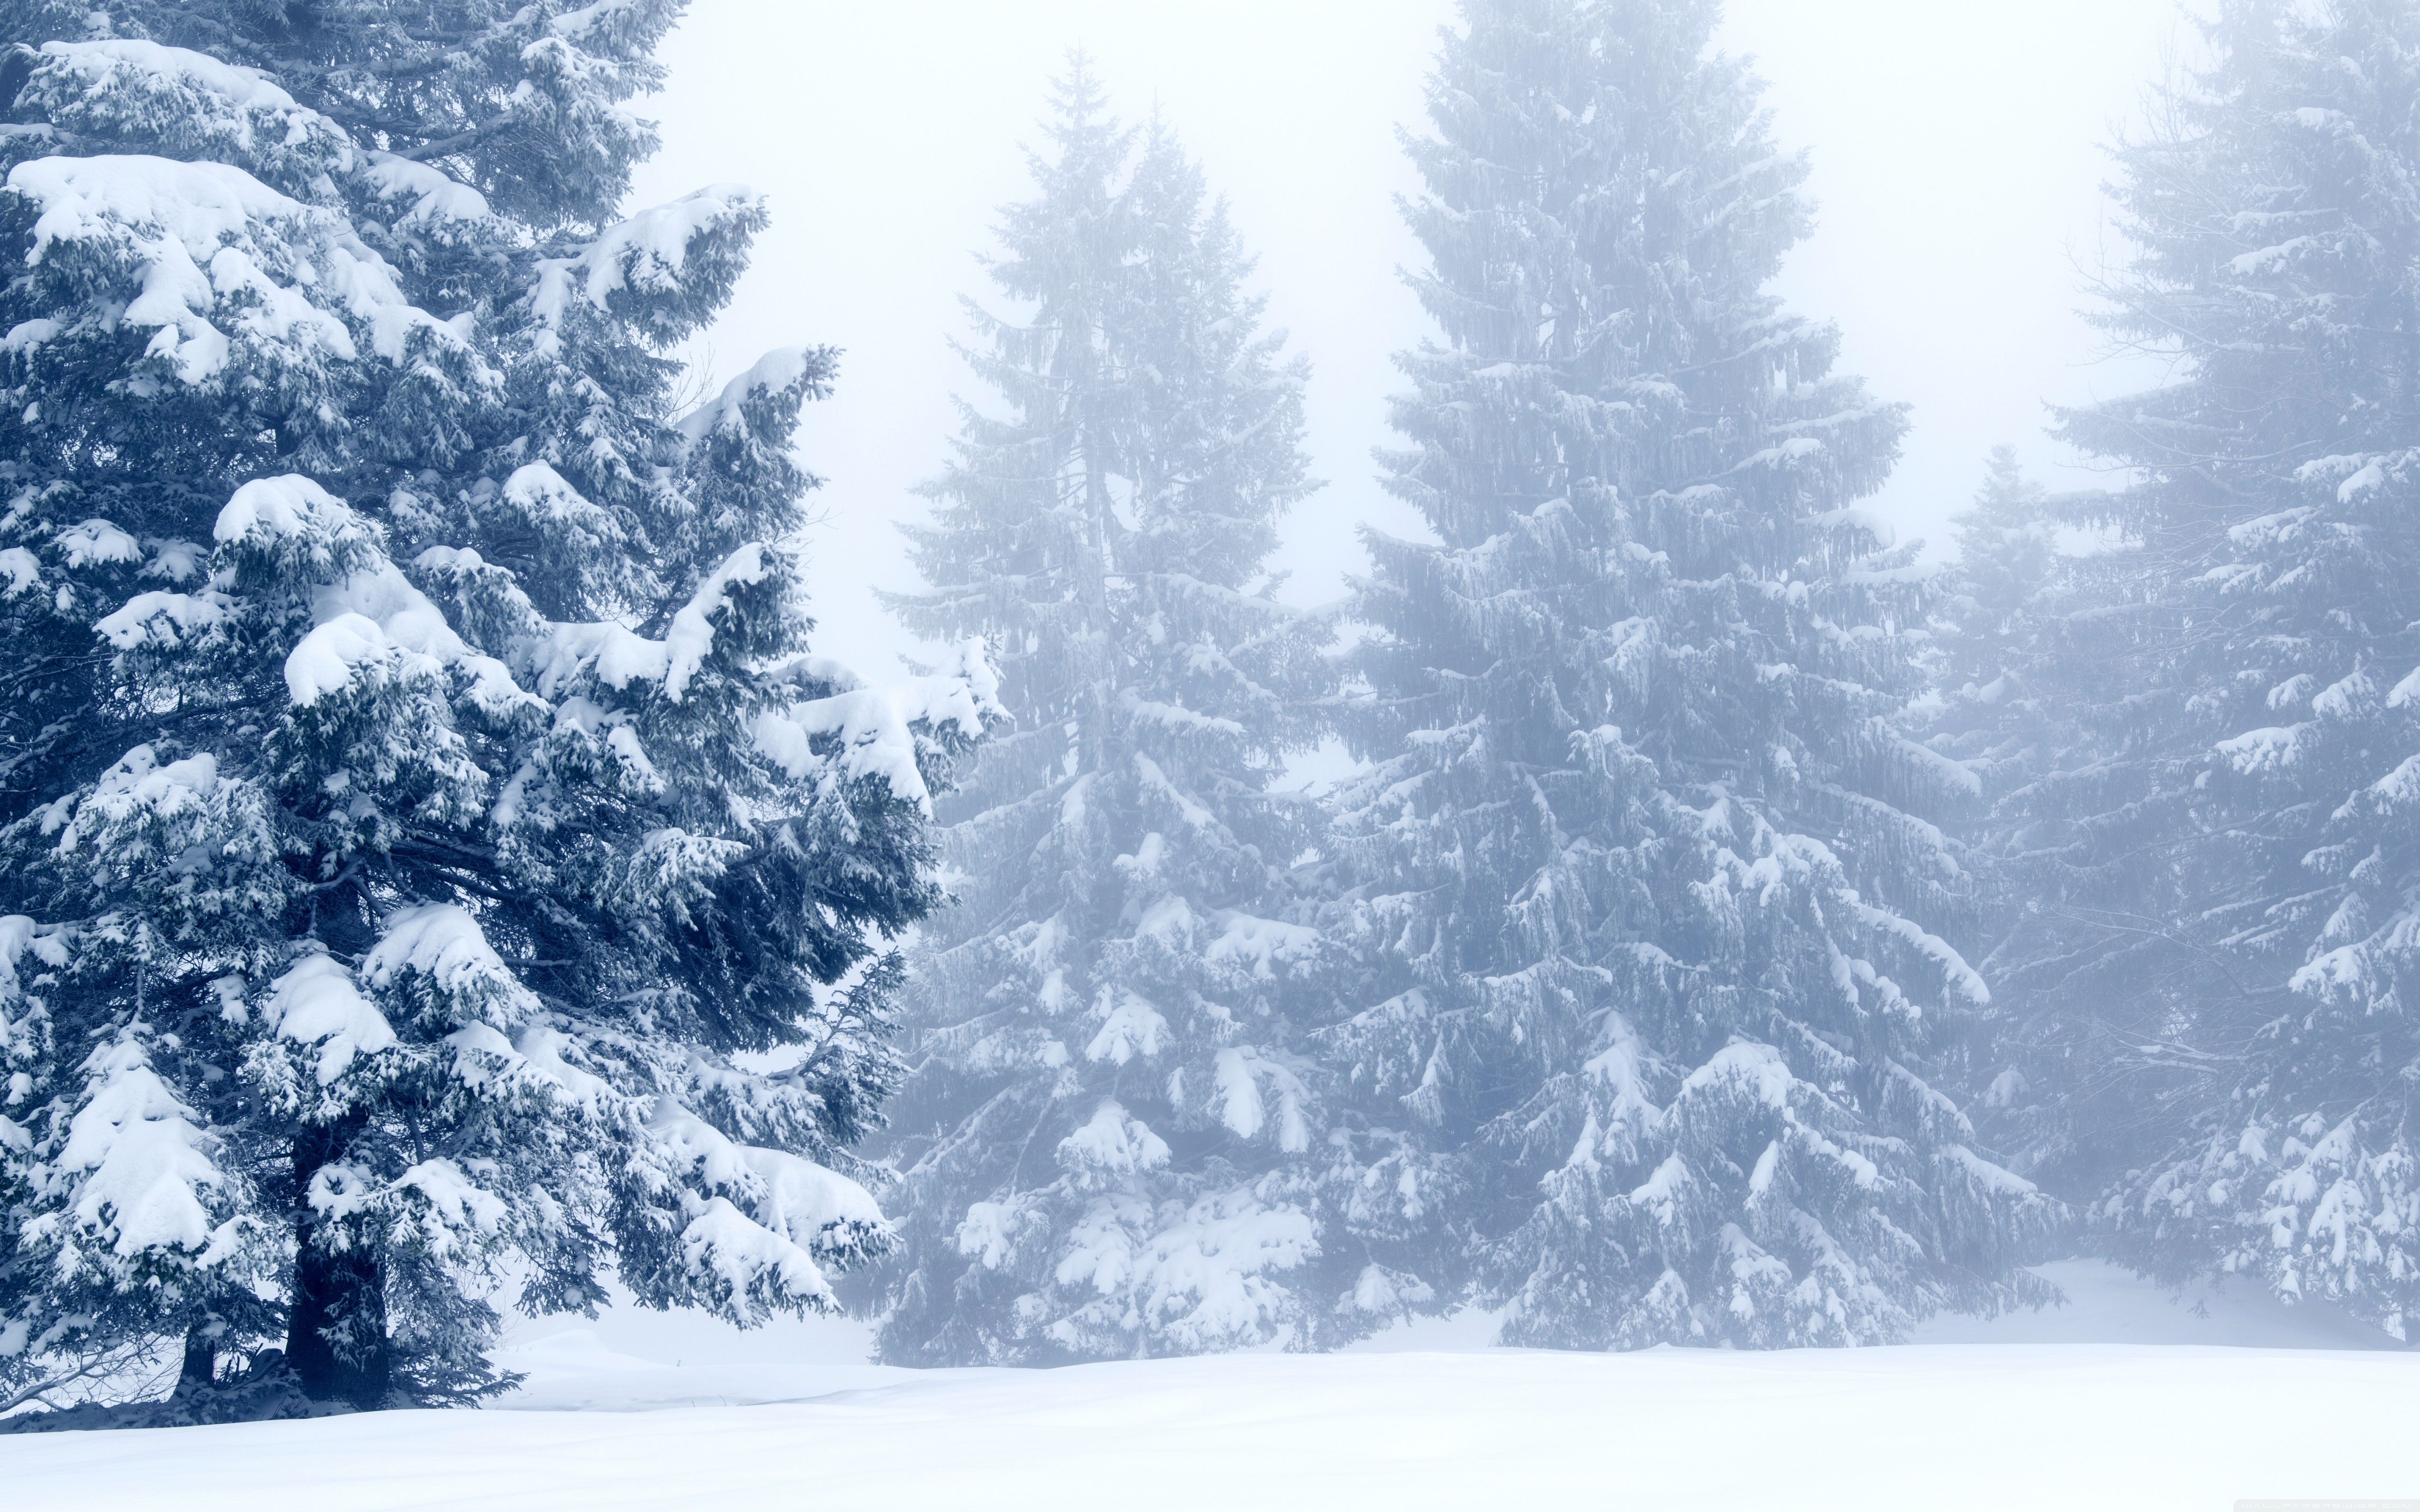 Snowy Trees, Winter Scenery Ultra HD Desktop Background Wallpaper